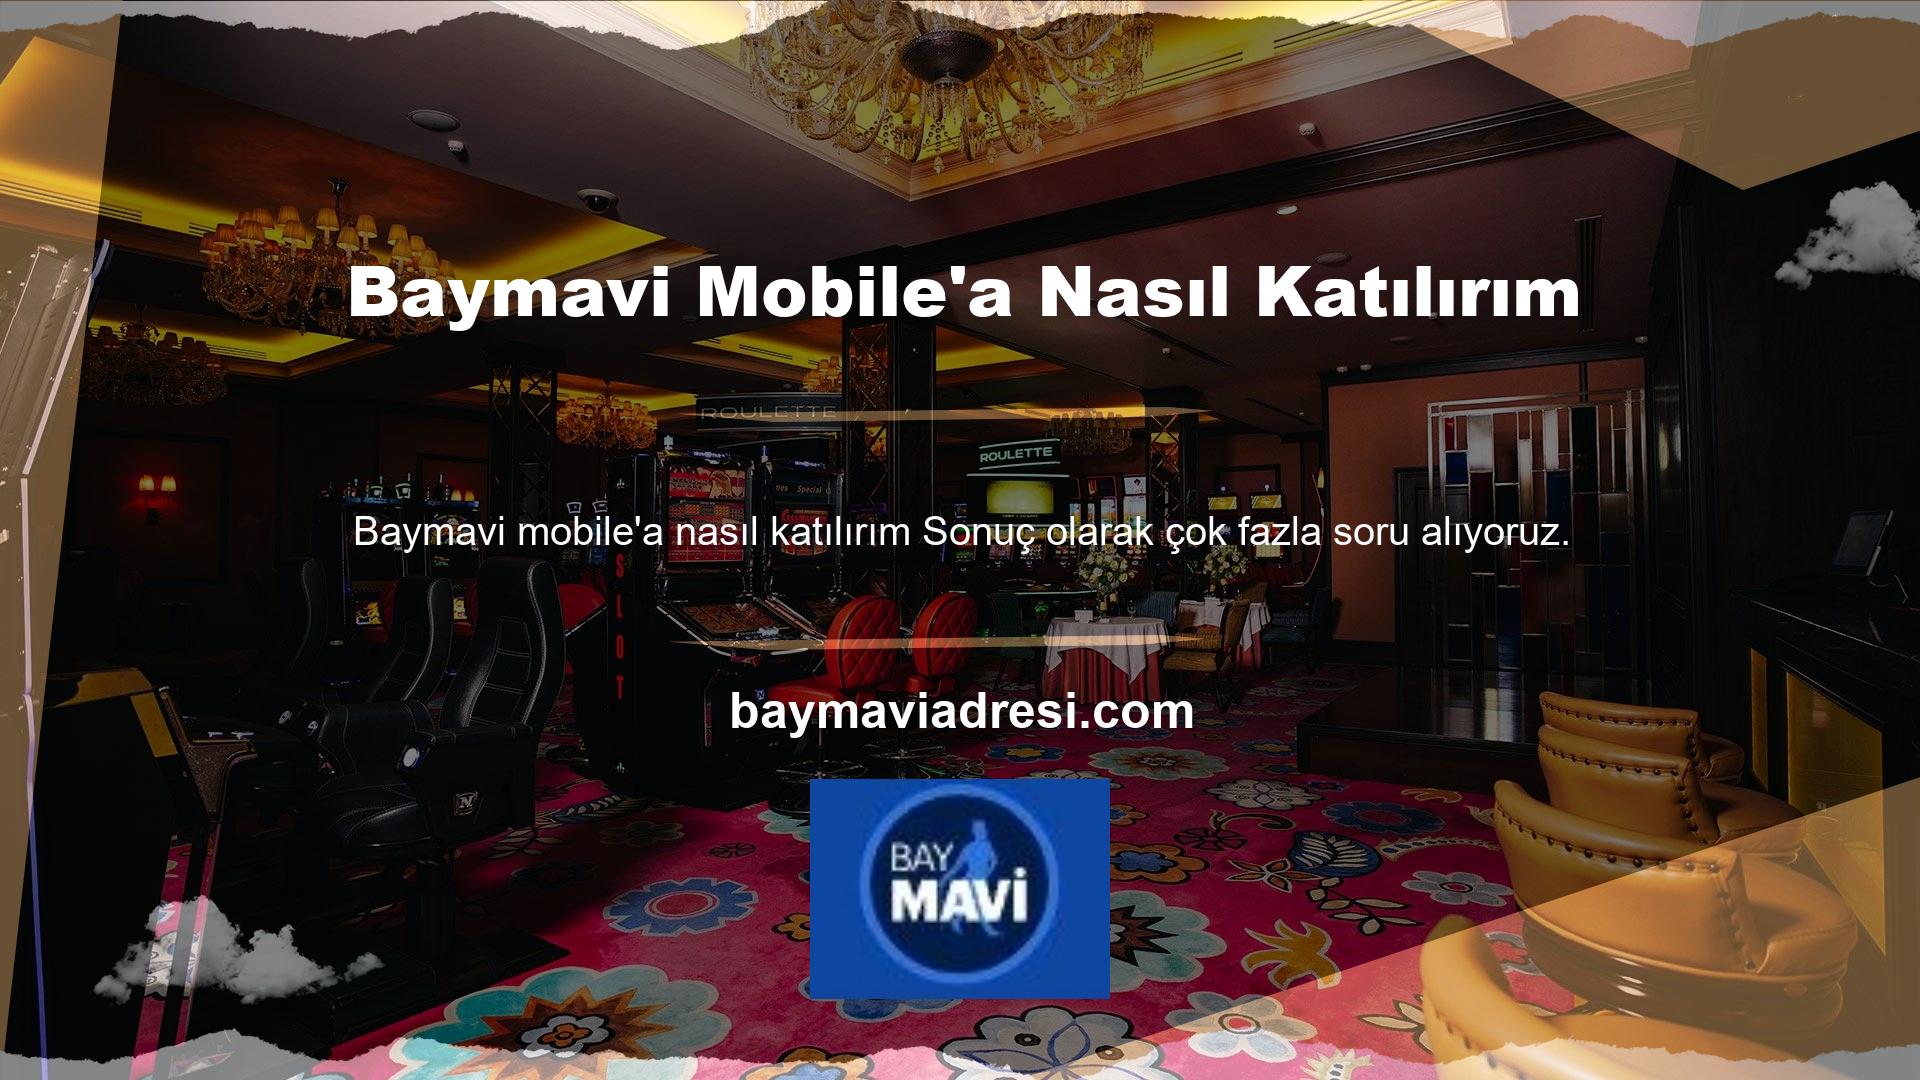 Öncelikle oyuncunun Baymavi mobil giriş adresi olan Baymavi